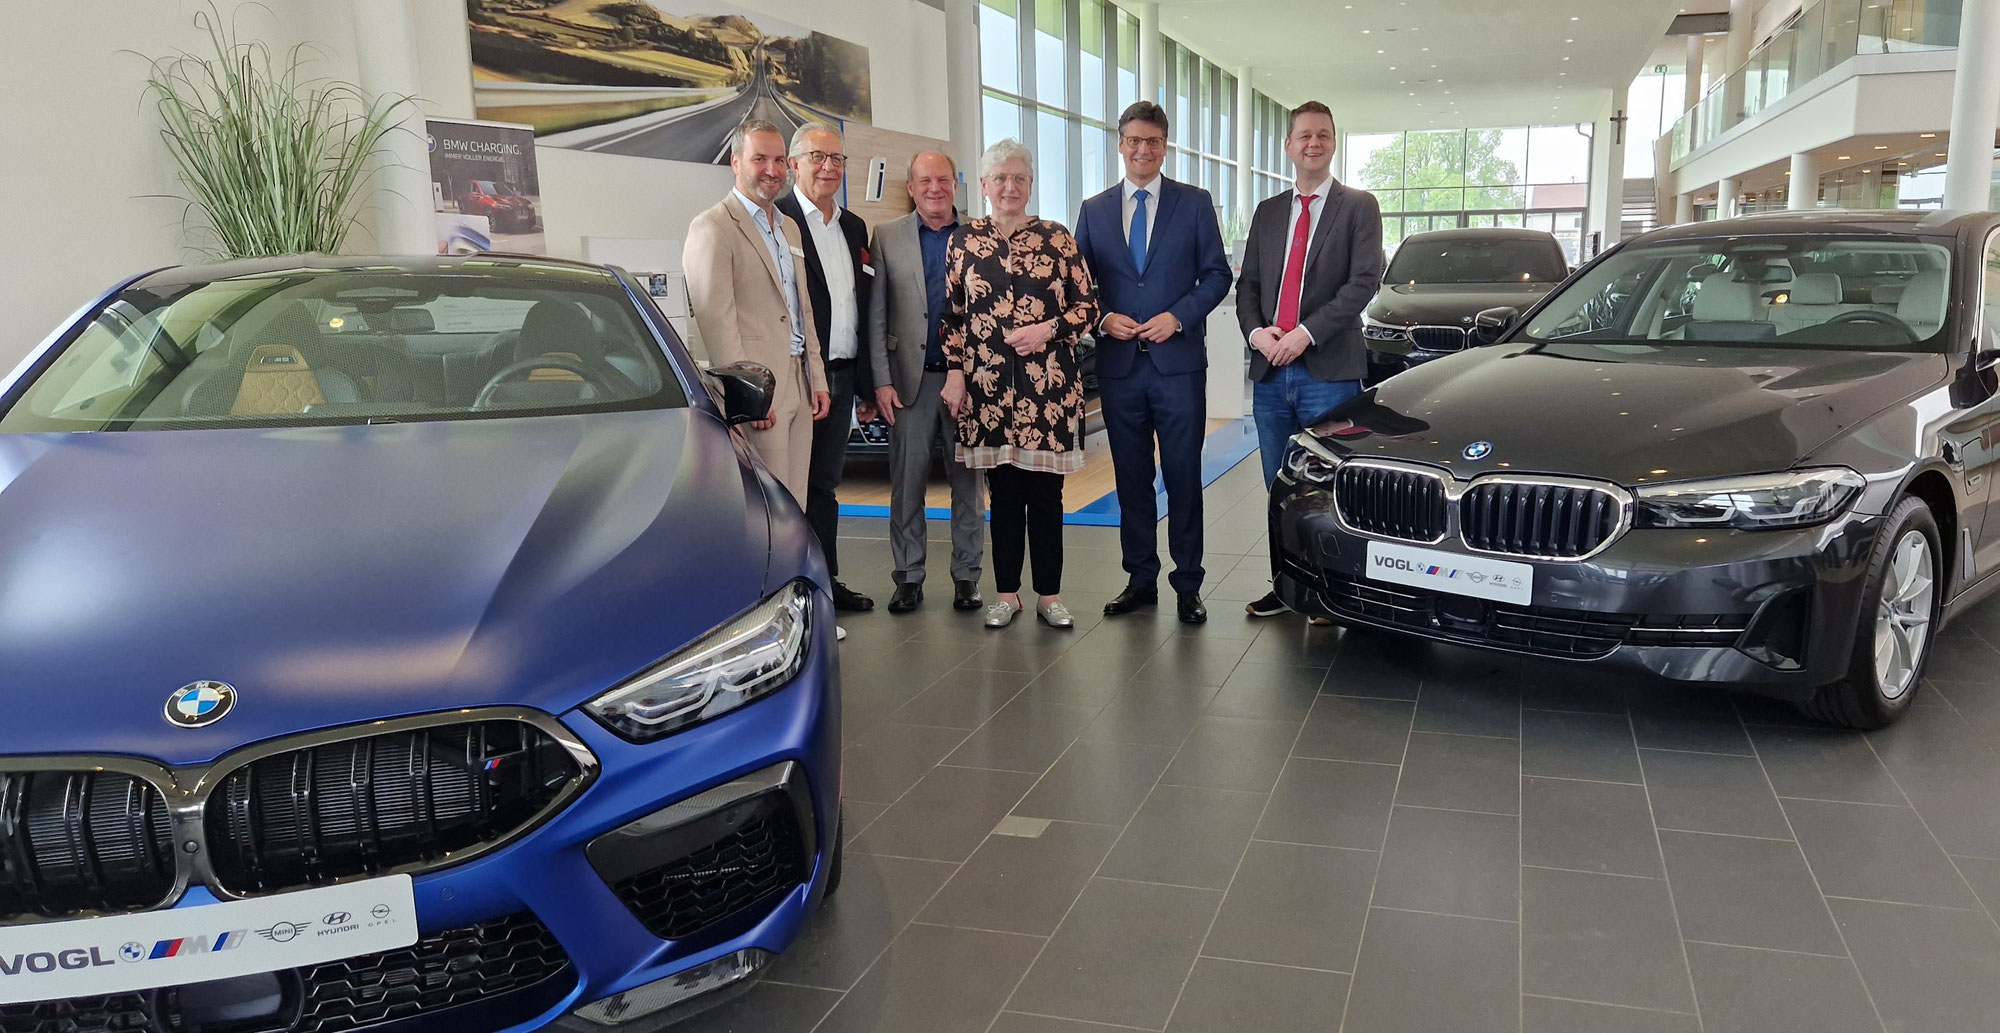 Autohaus VOGL spendet zusammen mit der BMW AG zwei Fahrzeuge im Gesamtwert von ca. 80.000 EUR an die Berufsschule Mühldorf und an die Handwerkskammer.